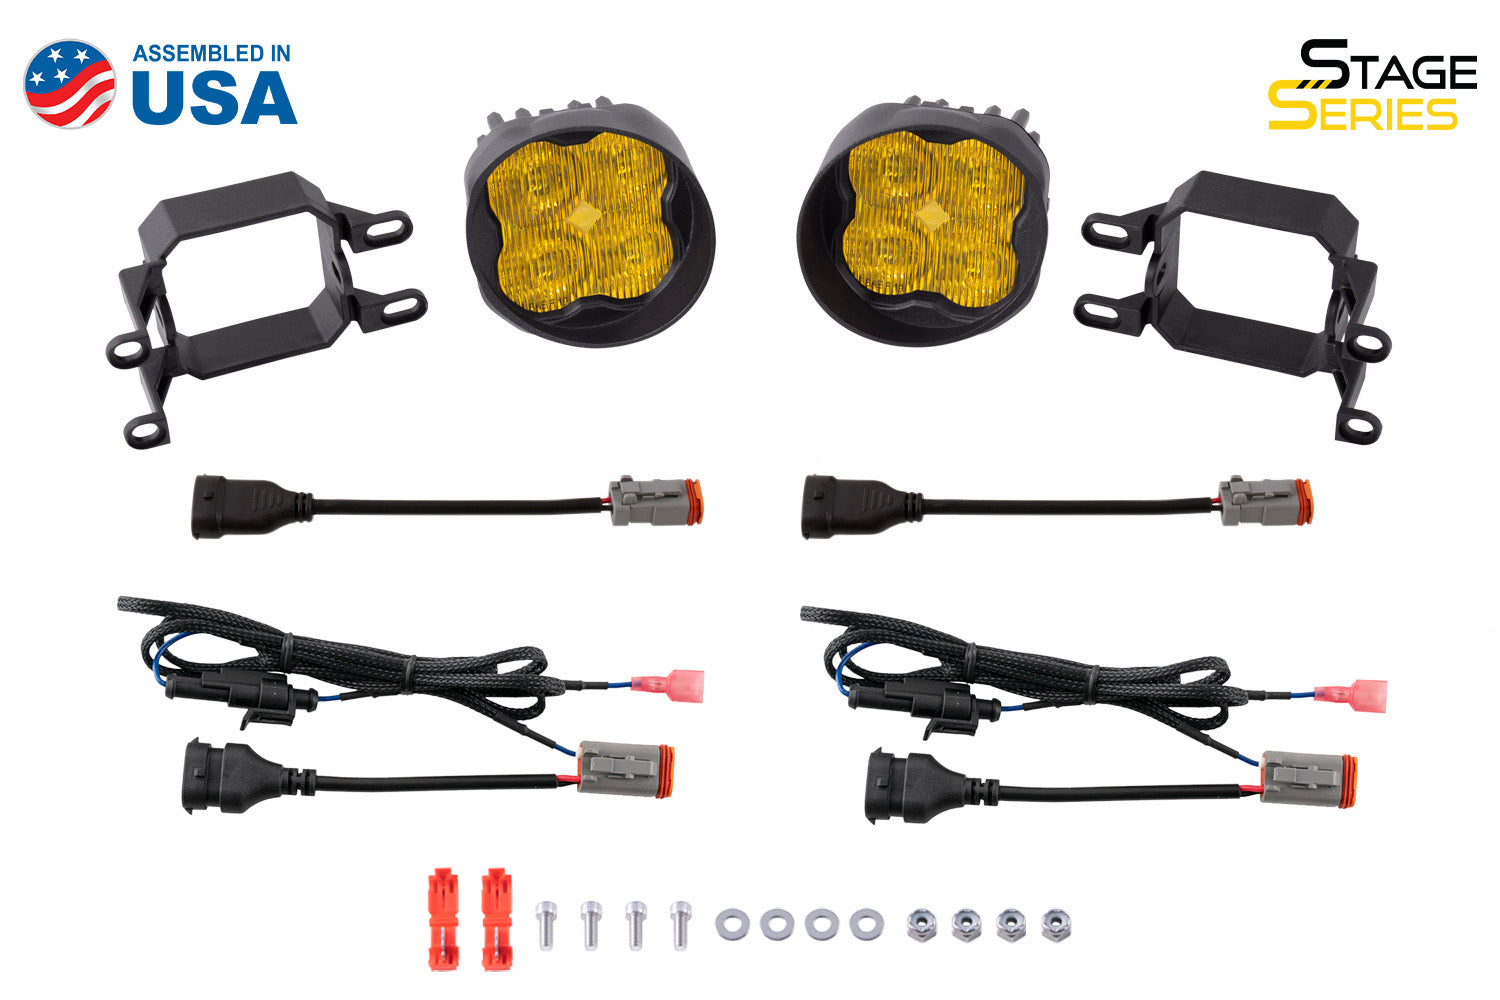 SS3 LED Fog Light Kit for 2009-2014 Toyota Venza Yellow SAE Fog Sport Diode Dynamics